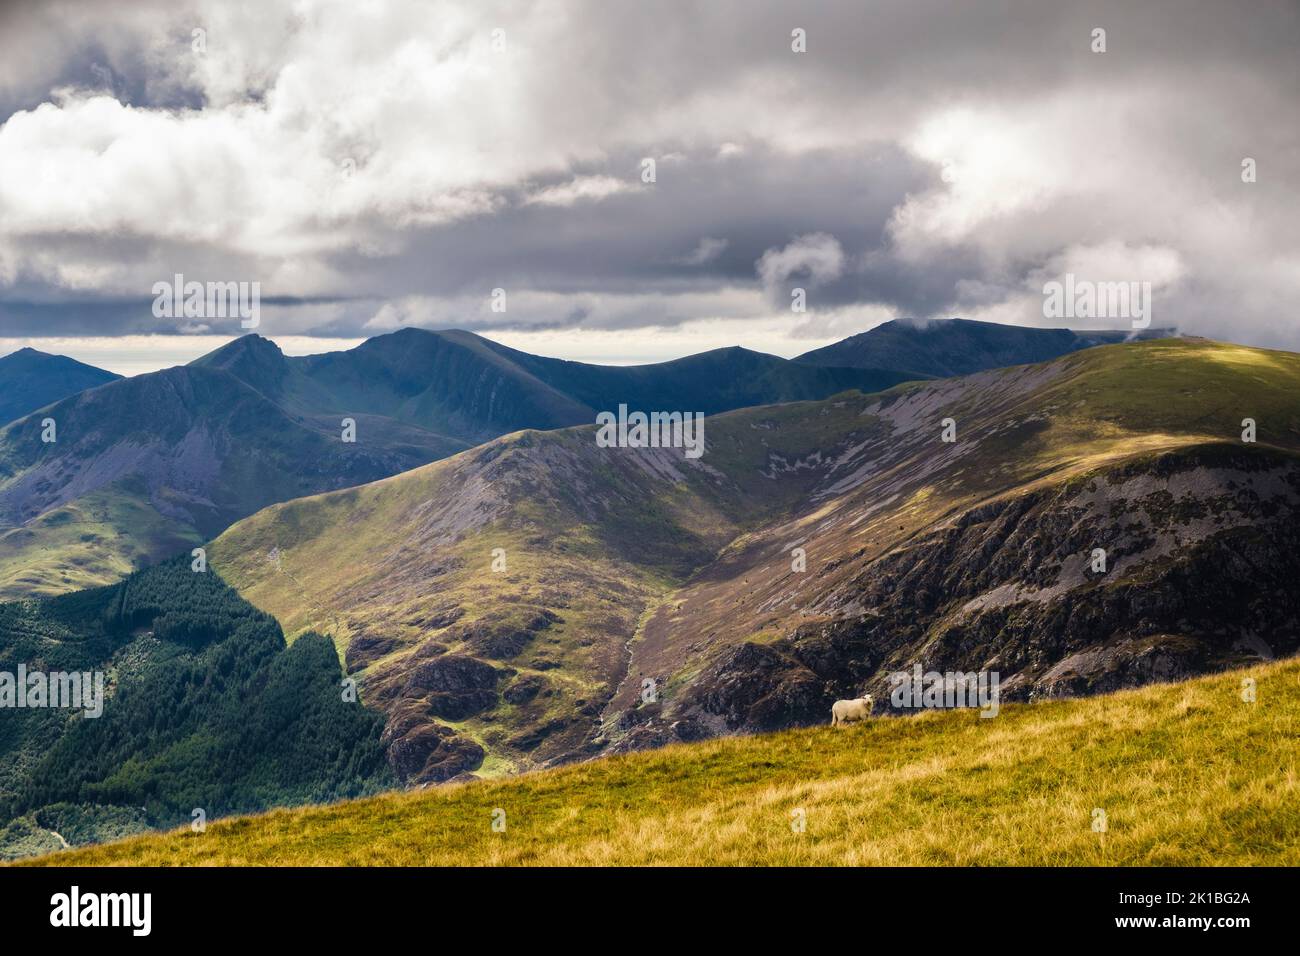 Blick über den Beddgelert Forest und Mynydd Mawr auf die Nantlle Ridge Bergkette von Moel Eilio im Snowdonia National Park. Llanberis Gwynedd Wales Großbritannien Stockfoto